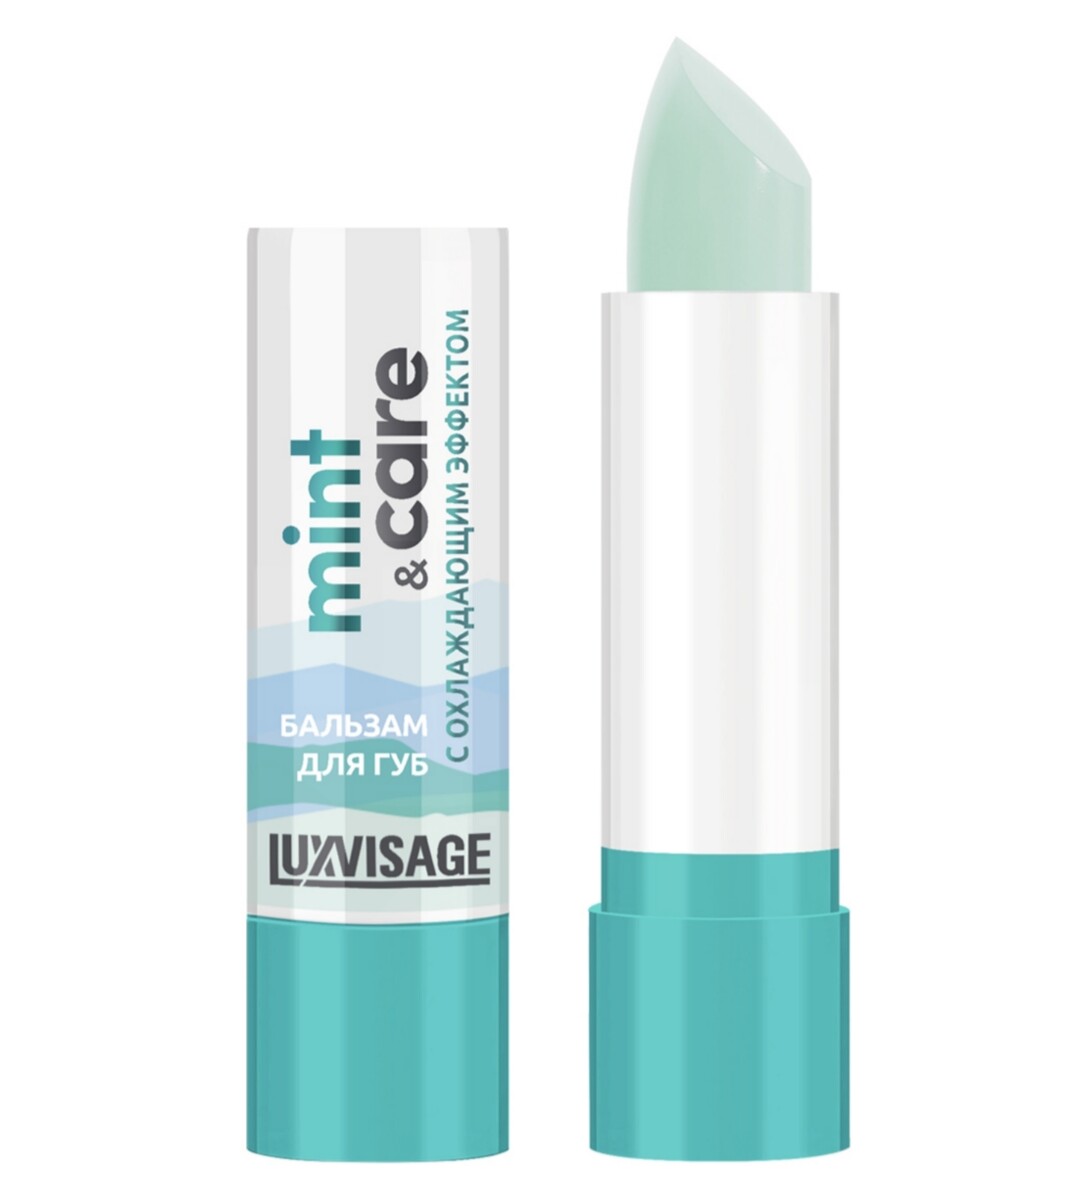 Luxvisage бальзам для губ luxvisage mint & care с охлаждающим эффектом 3,9г